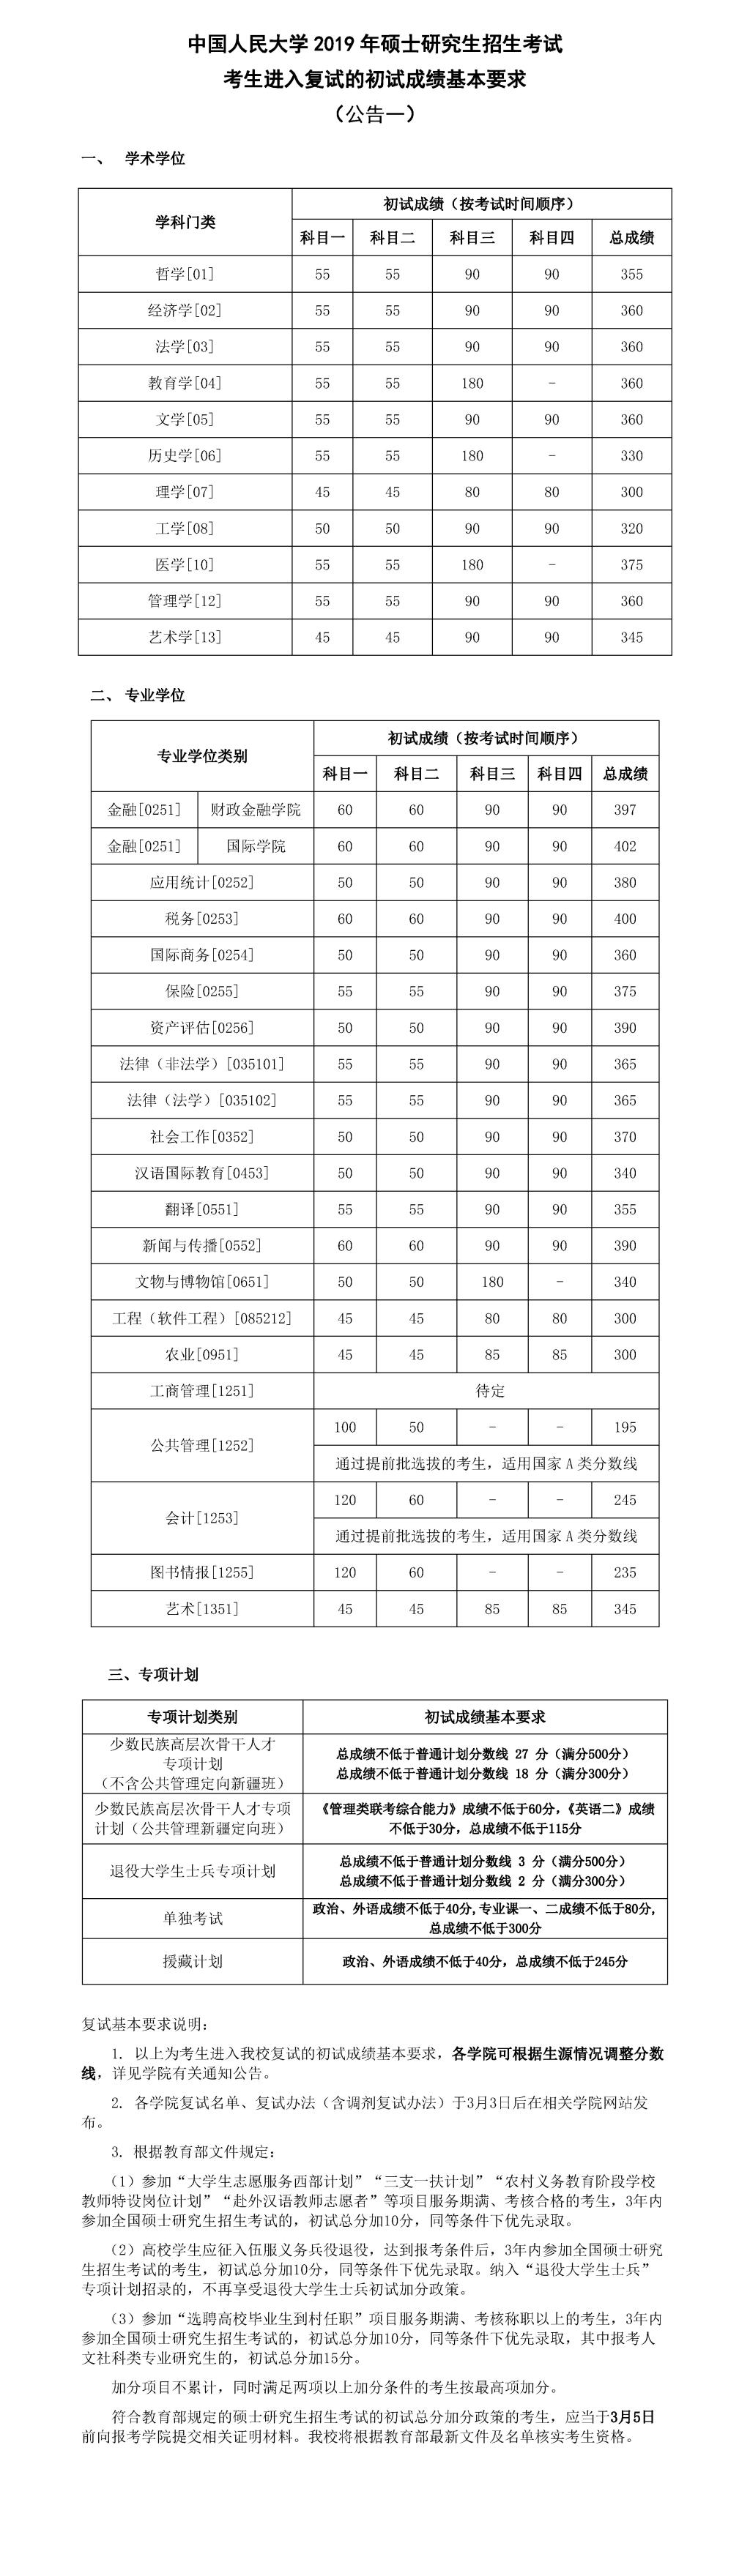 中国人民大学2019年考研复试分数线已公布